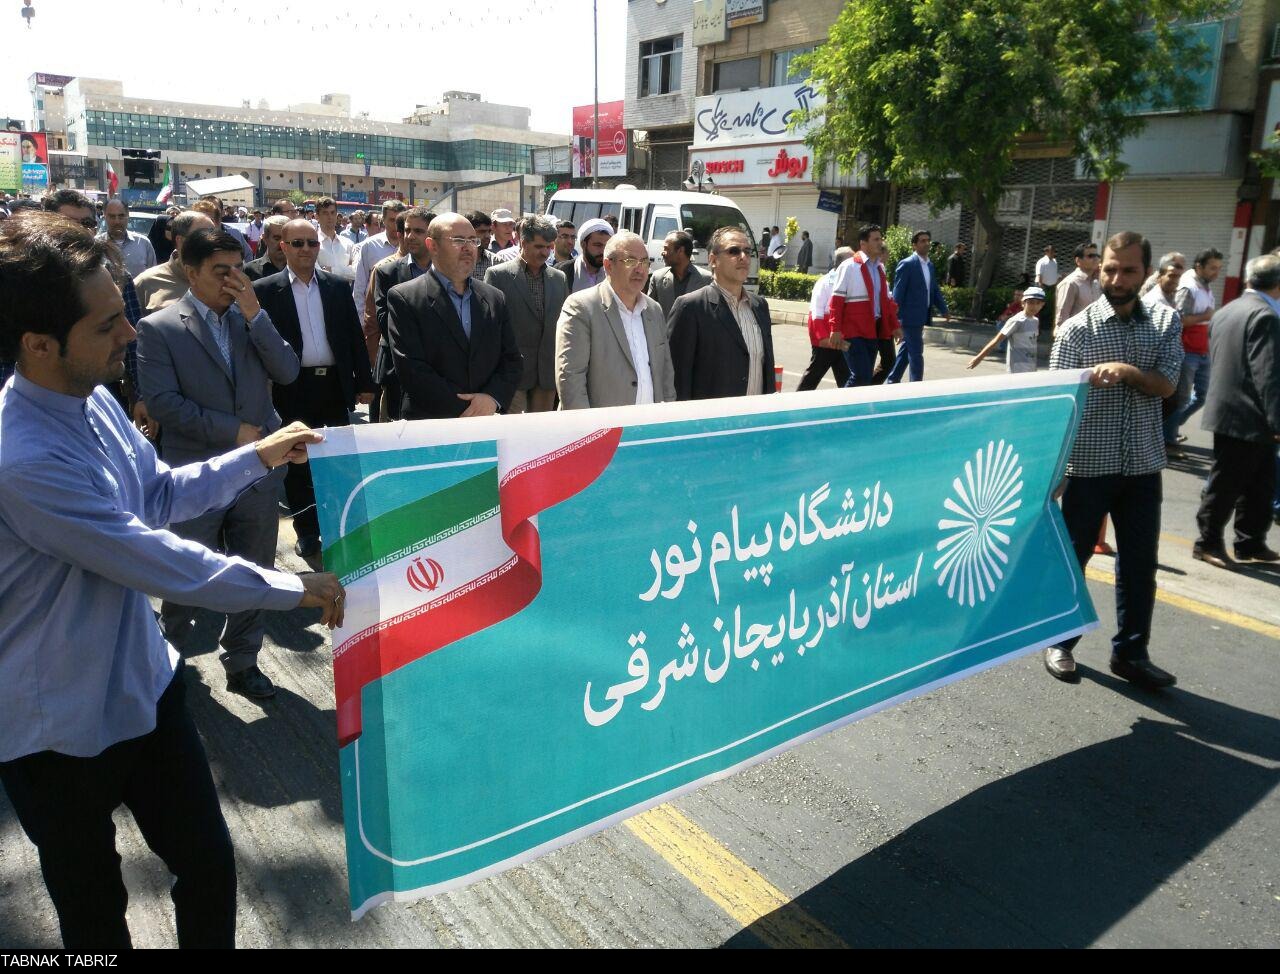 گزارش تصویری از راهپیمایی روز قدس از نگاه دوربین تابناک تبریز